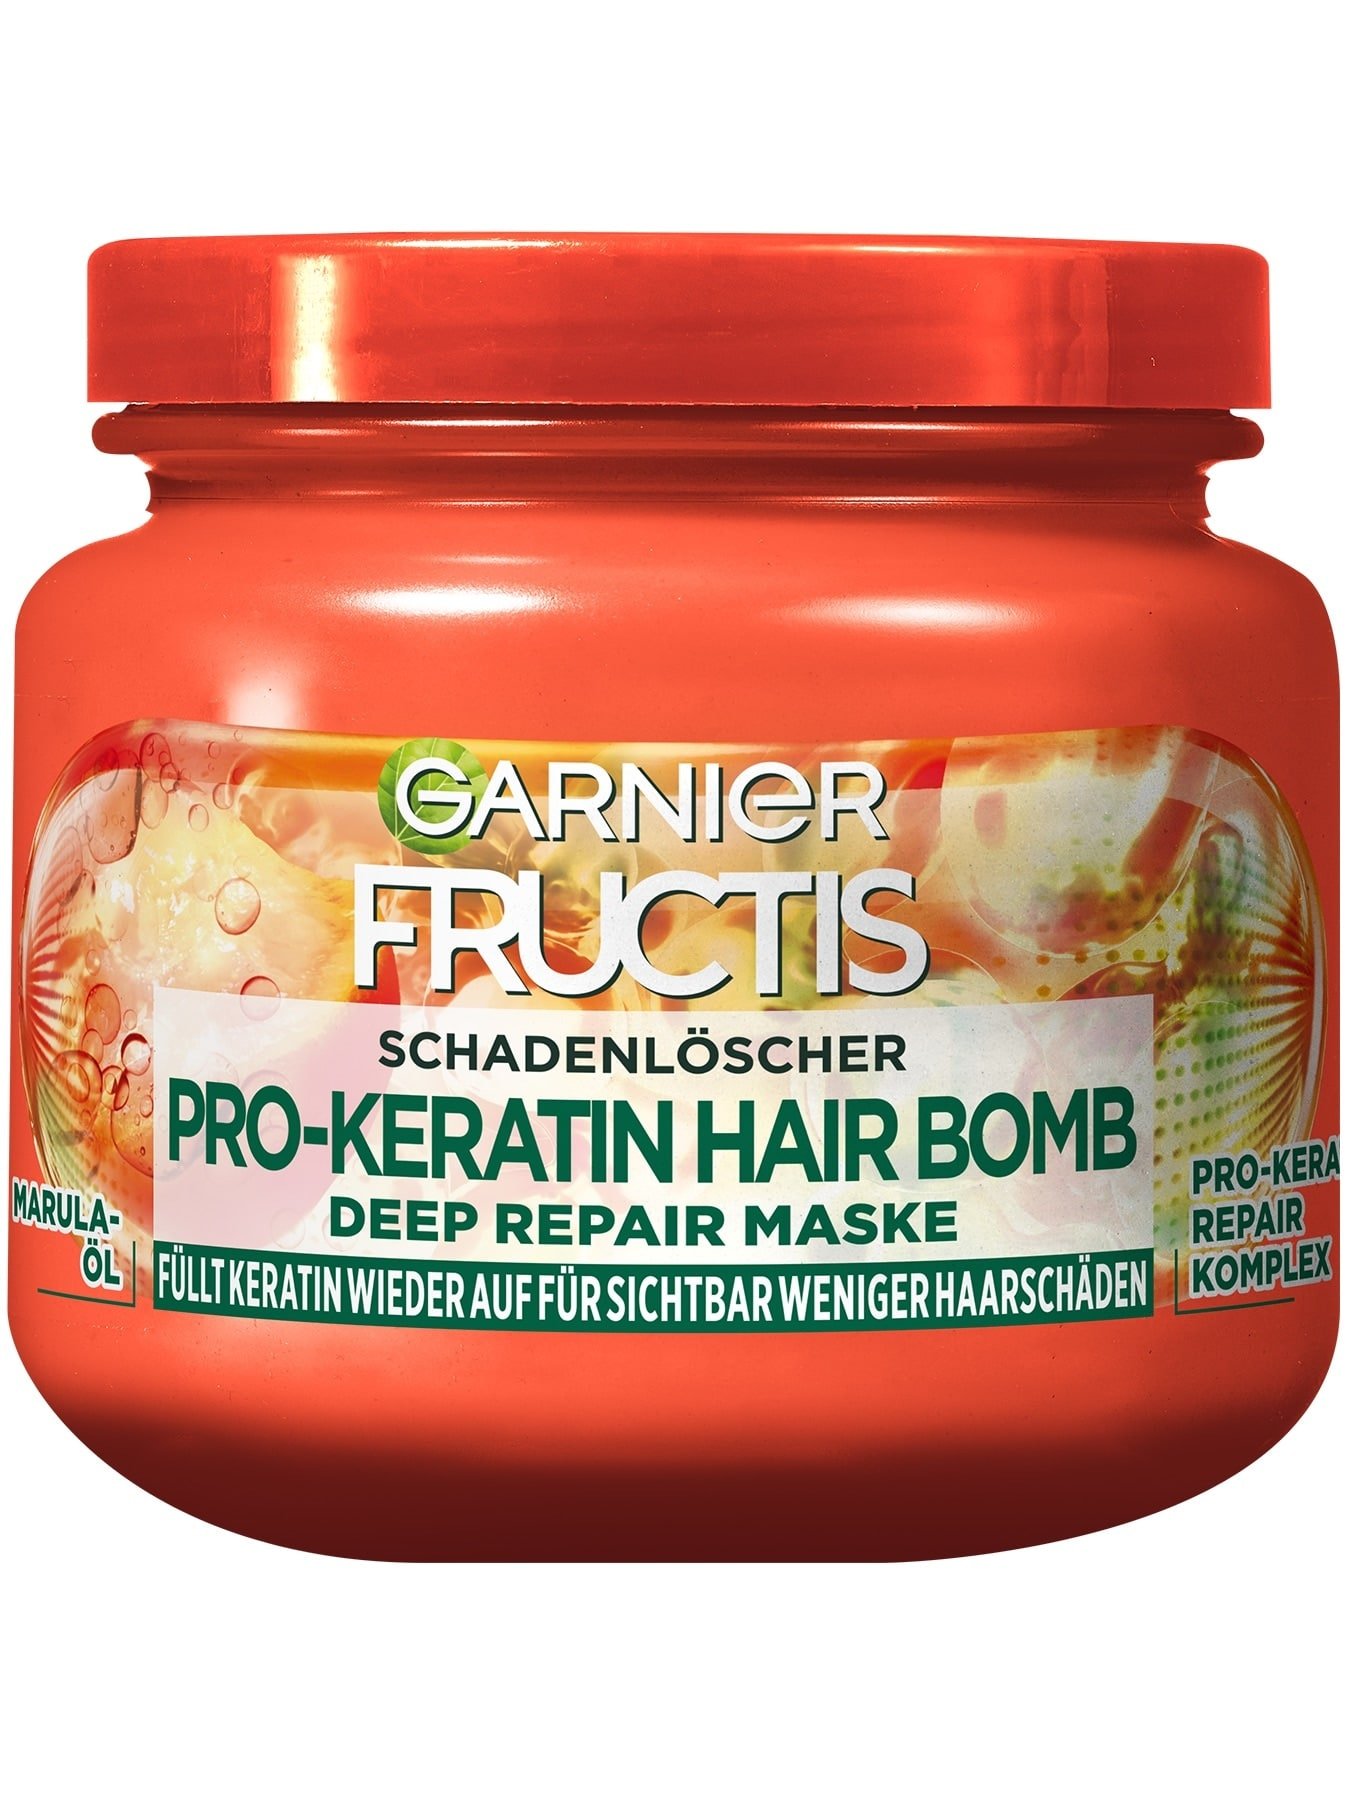 Fructis Schadenlöscher Pro-Keratin Hair Bomb - Produktabbildung